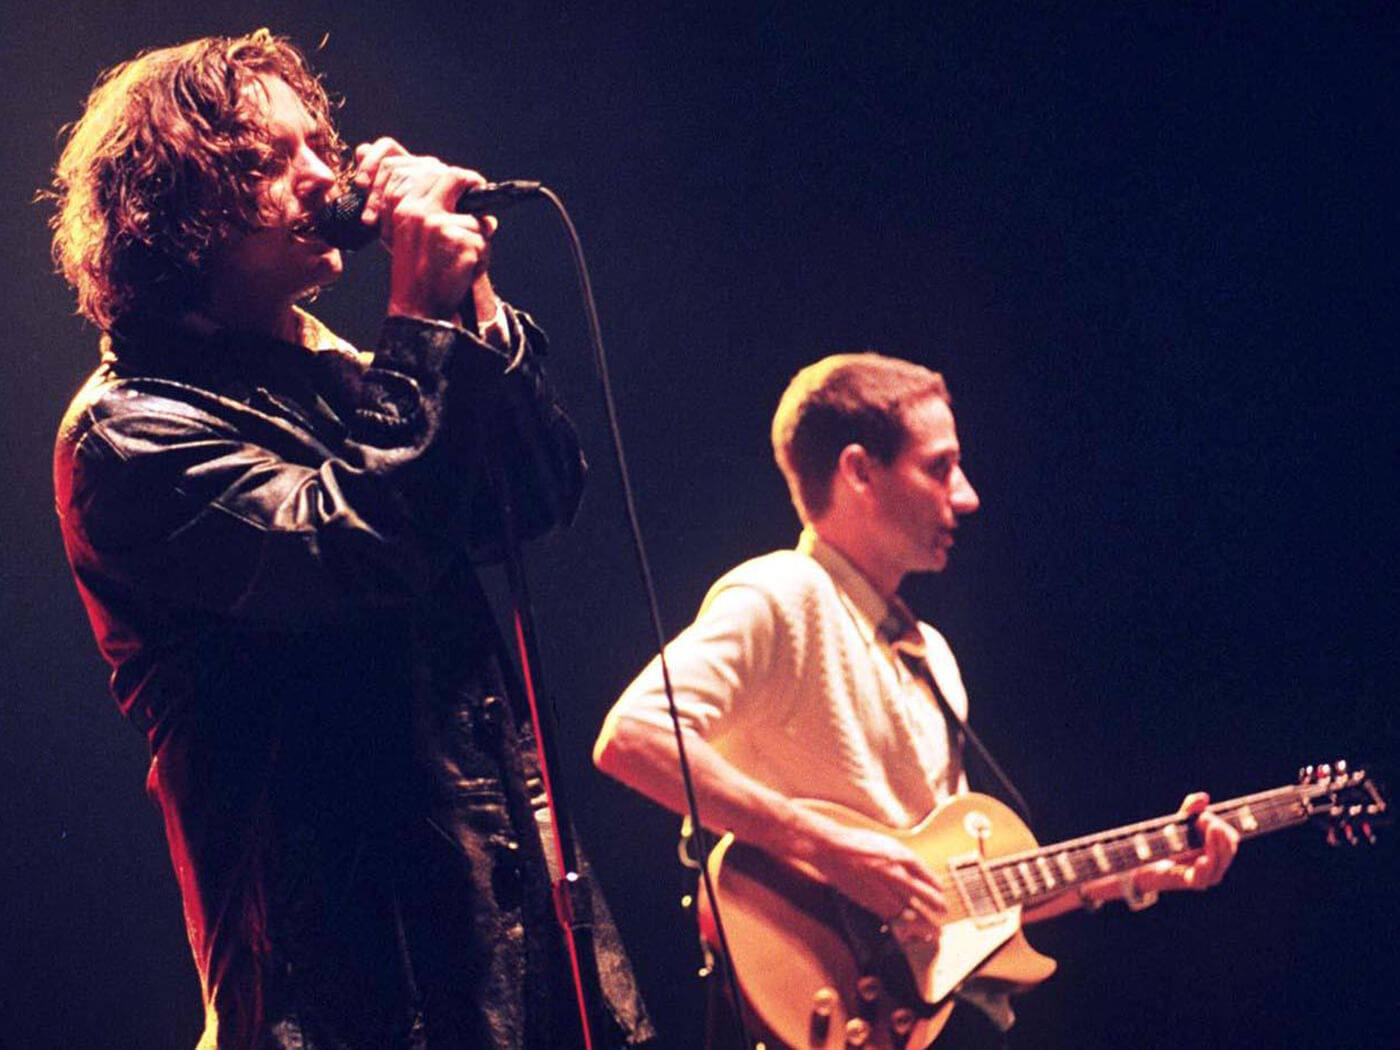 Pearl Jam Rock Band's Frontman Eddie Vedder Engrossed In Performance